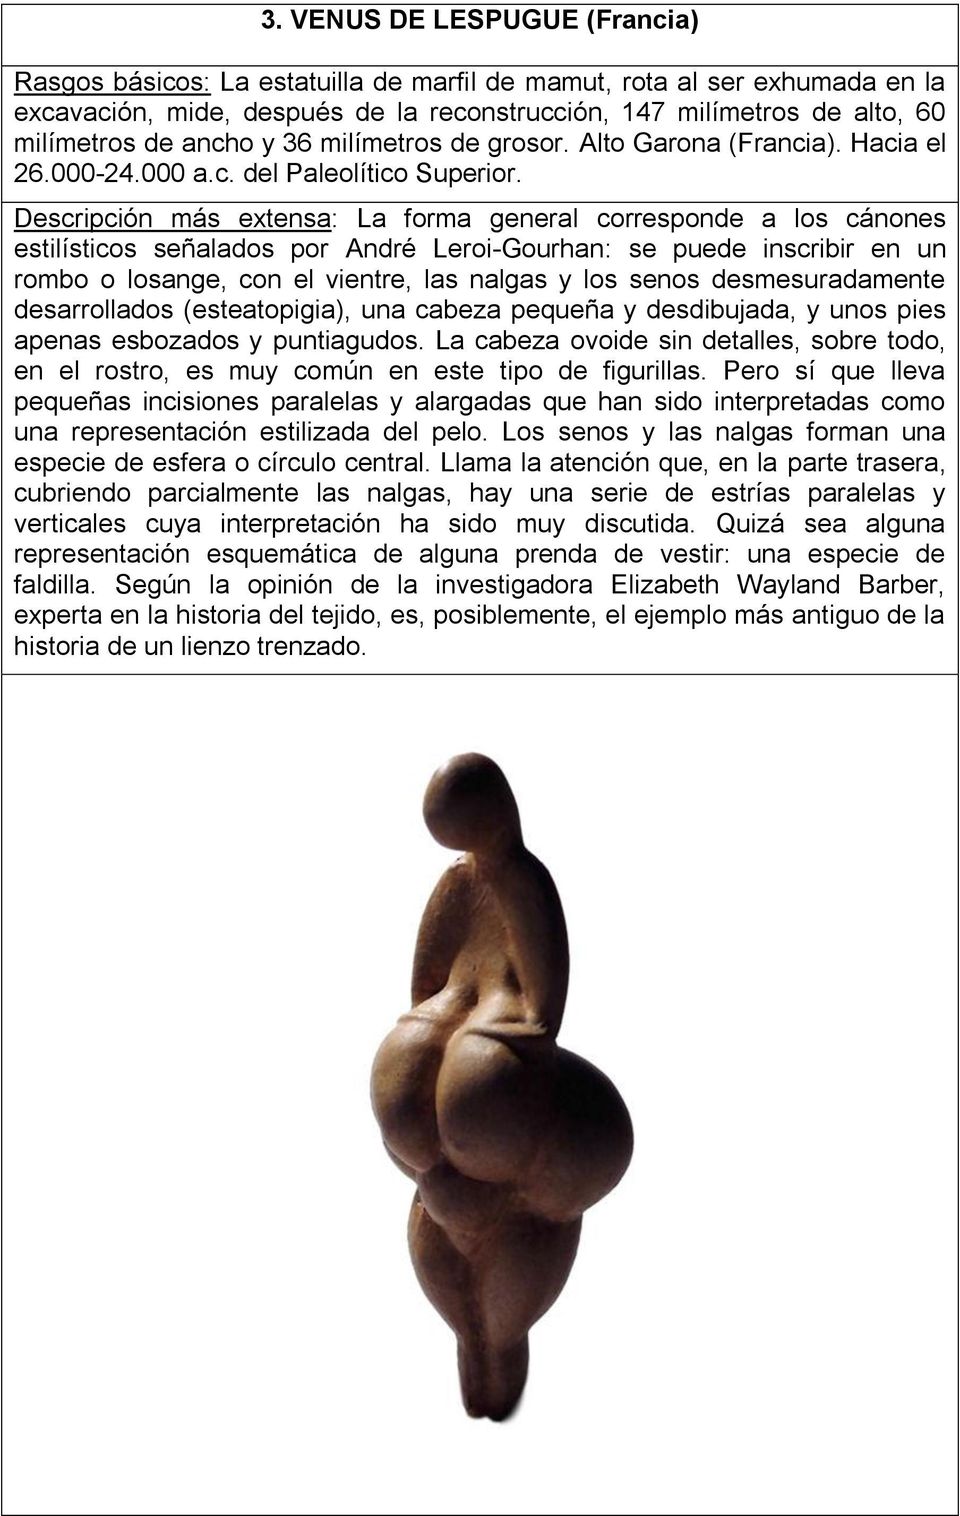 Descripción más extensa: La forma general corresponde a los cánones estilísticos señalados por André Leroi-Gourhan: se puede inscribir en un rombo o losange, con el vientre, las nalgas y los senos